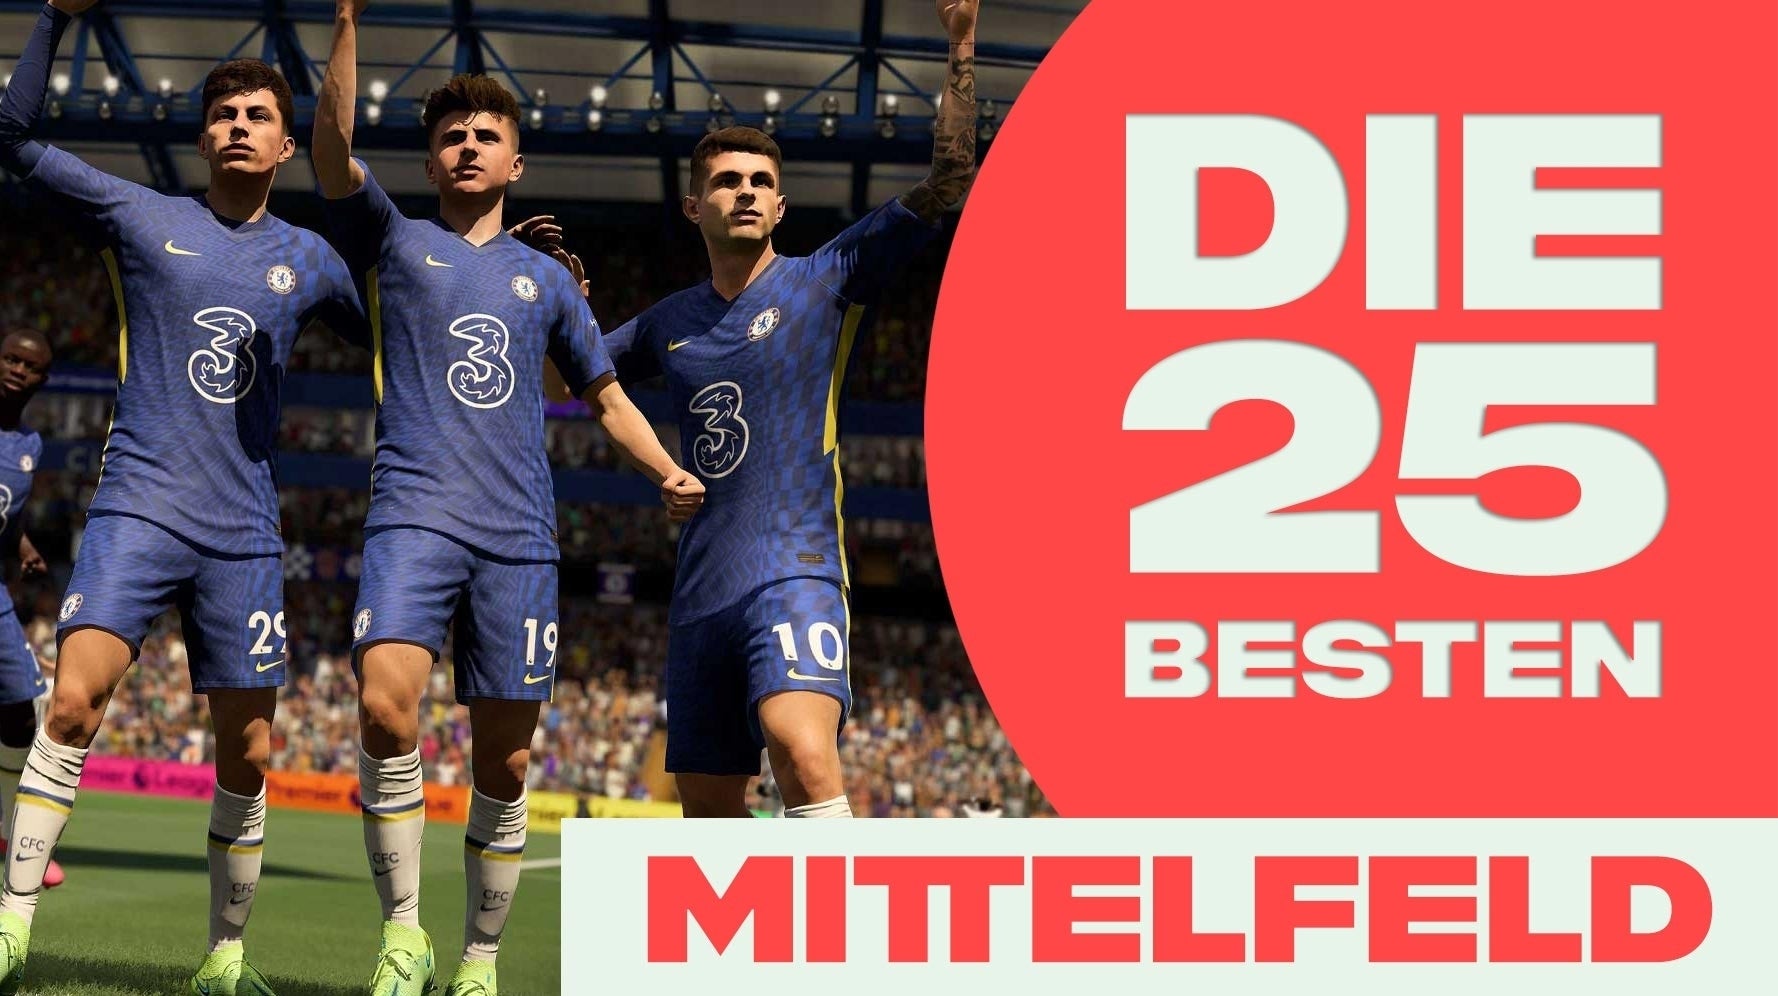 Bilder zu FIFA 22: Die 25 besten Spieler im Mittelfeld für ZM, ZOM, ZDM, LM, RM